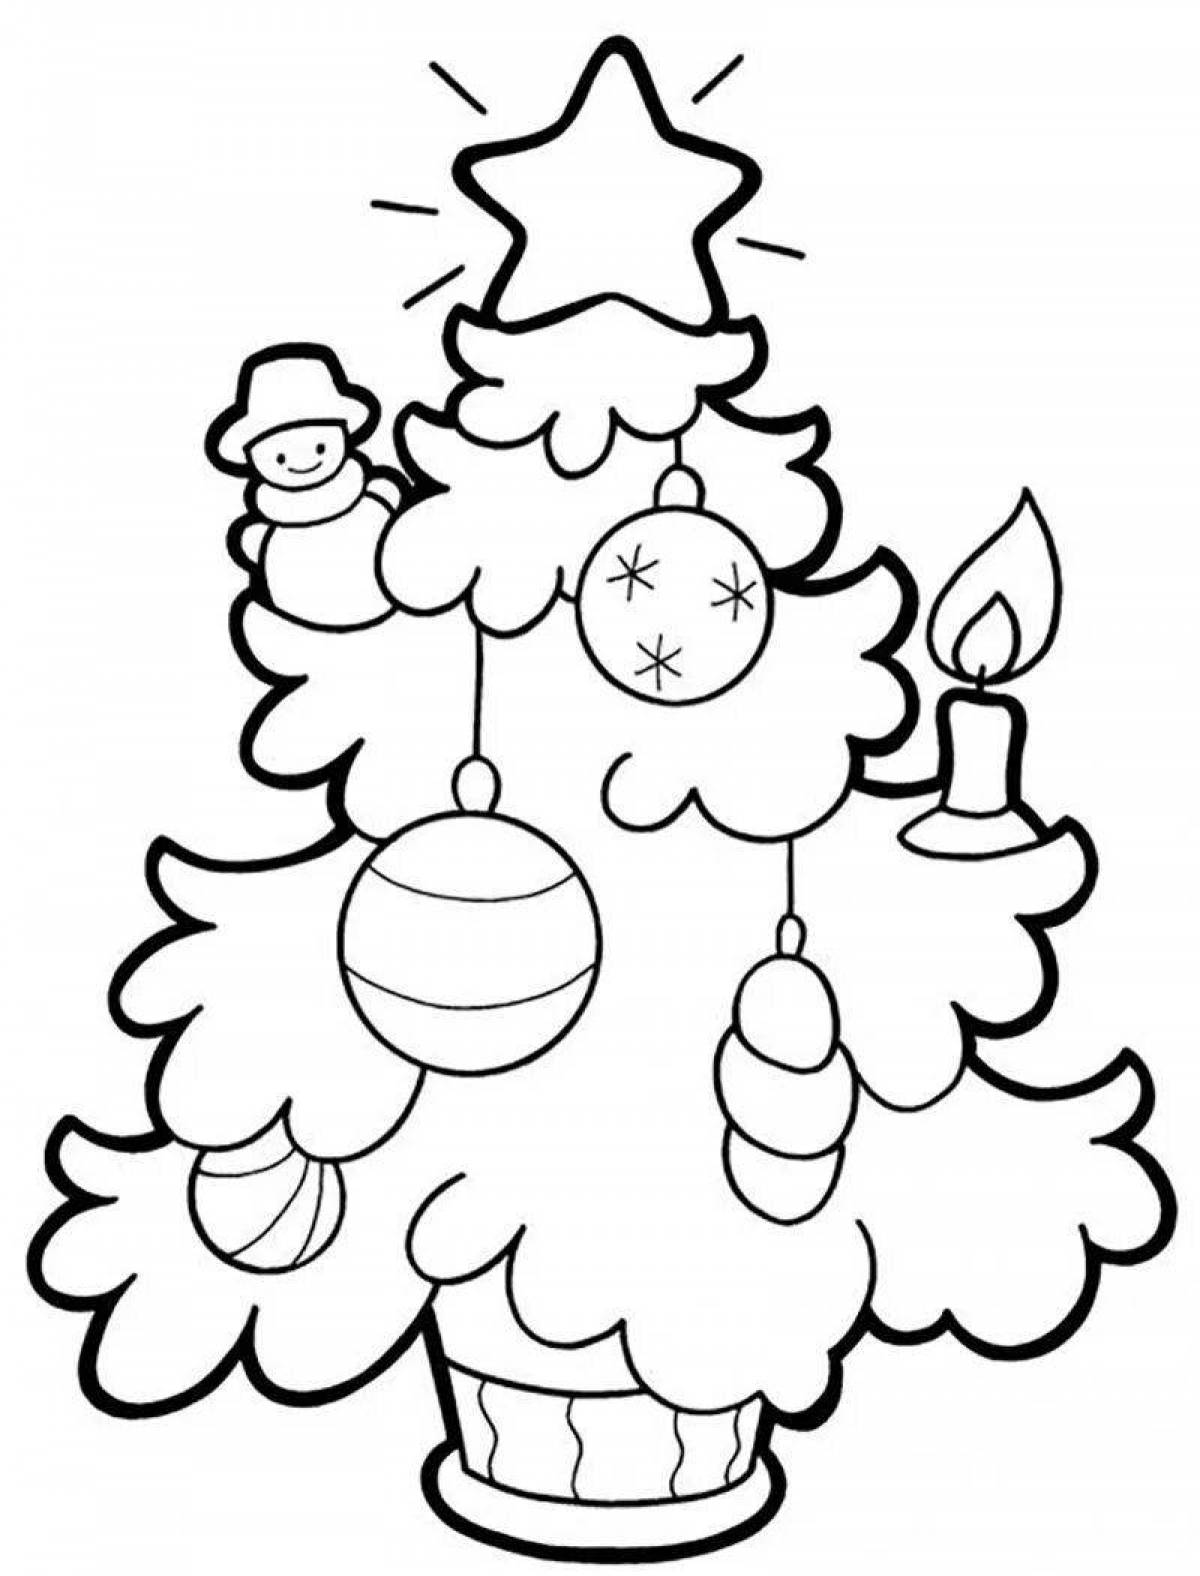 Украшенная раскраска «рождественская елка» для детей